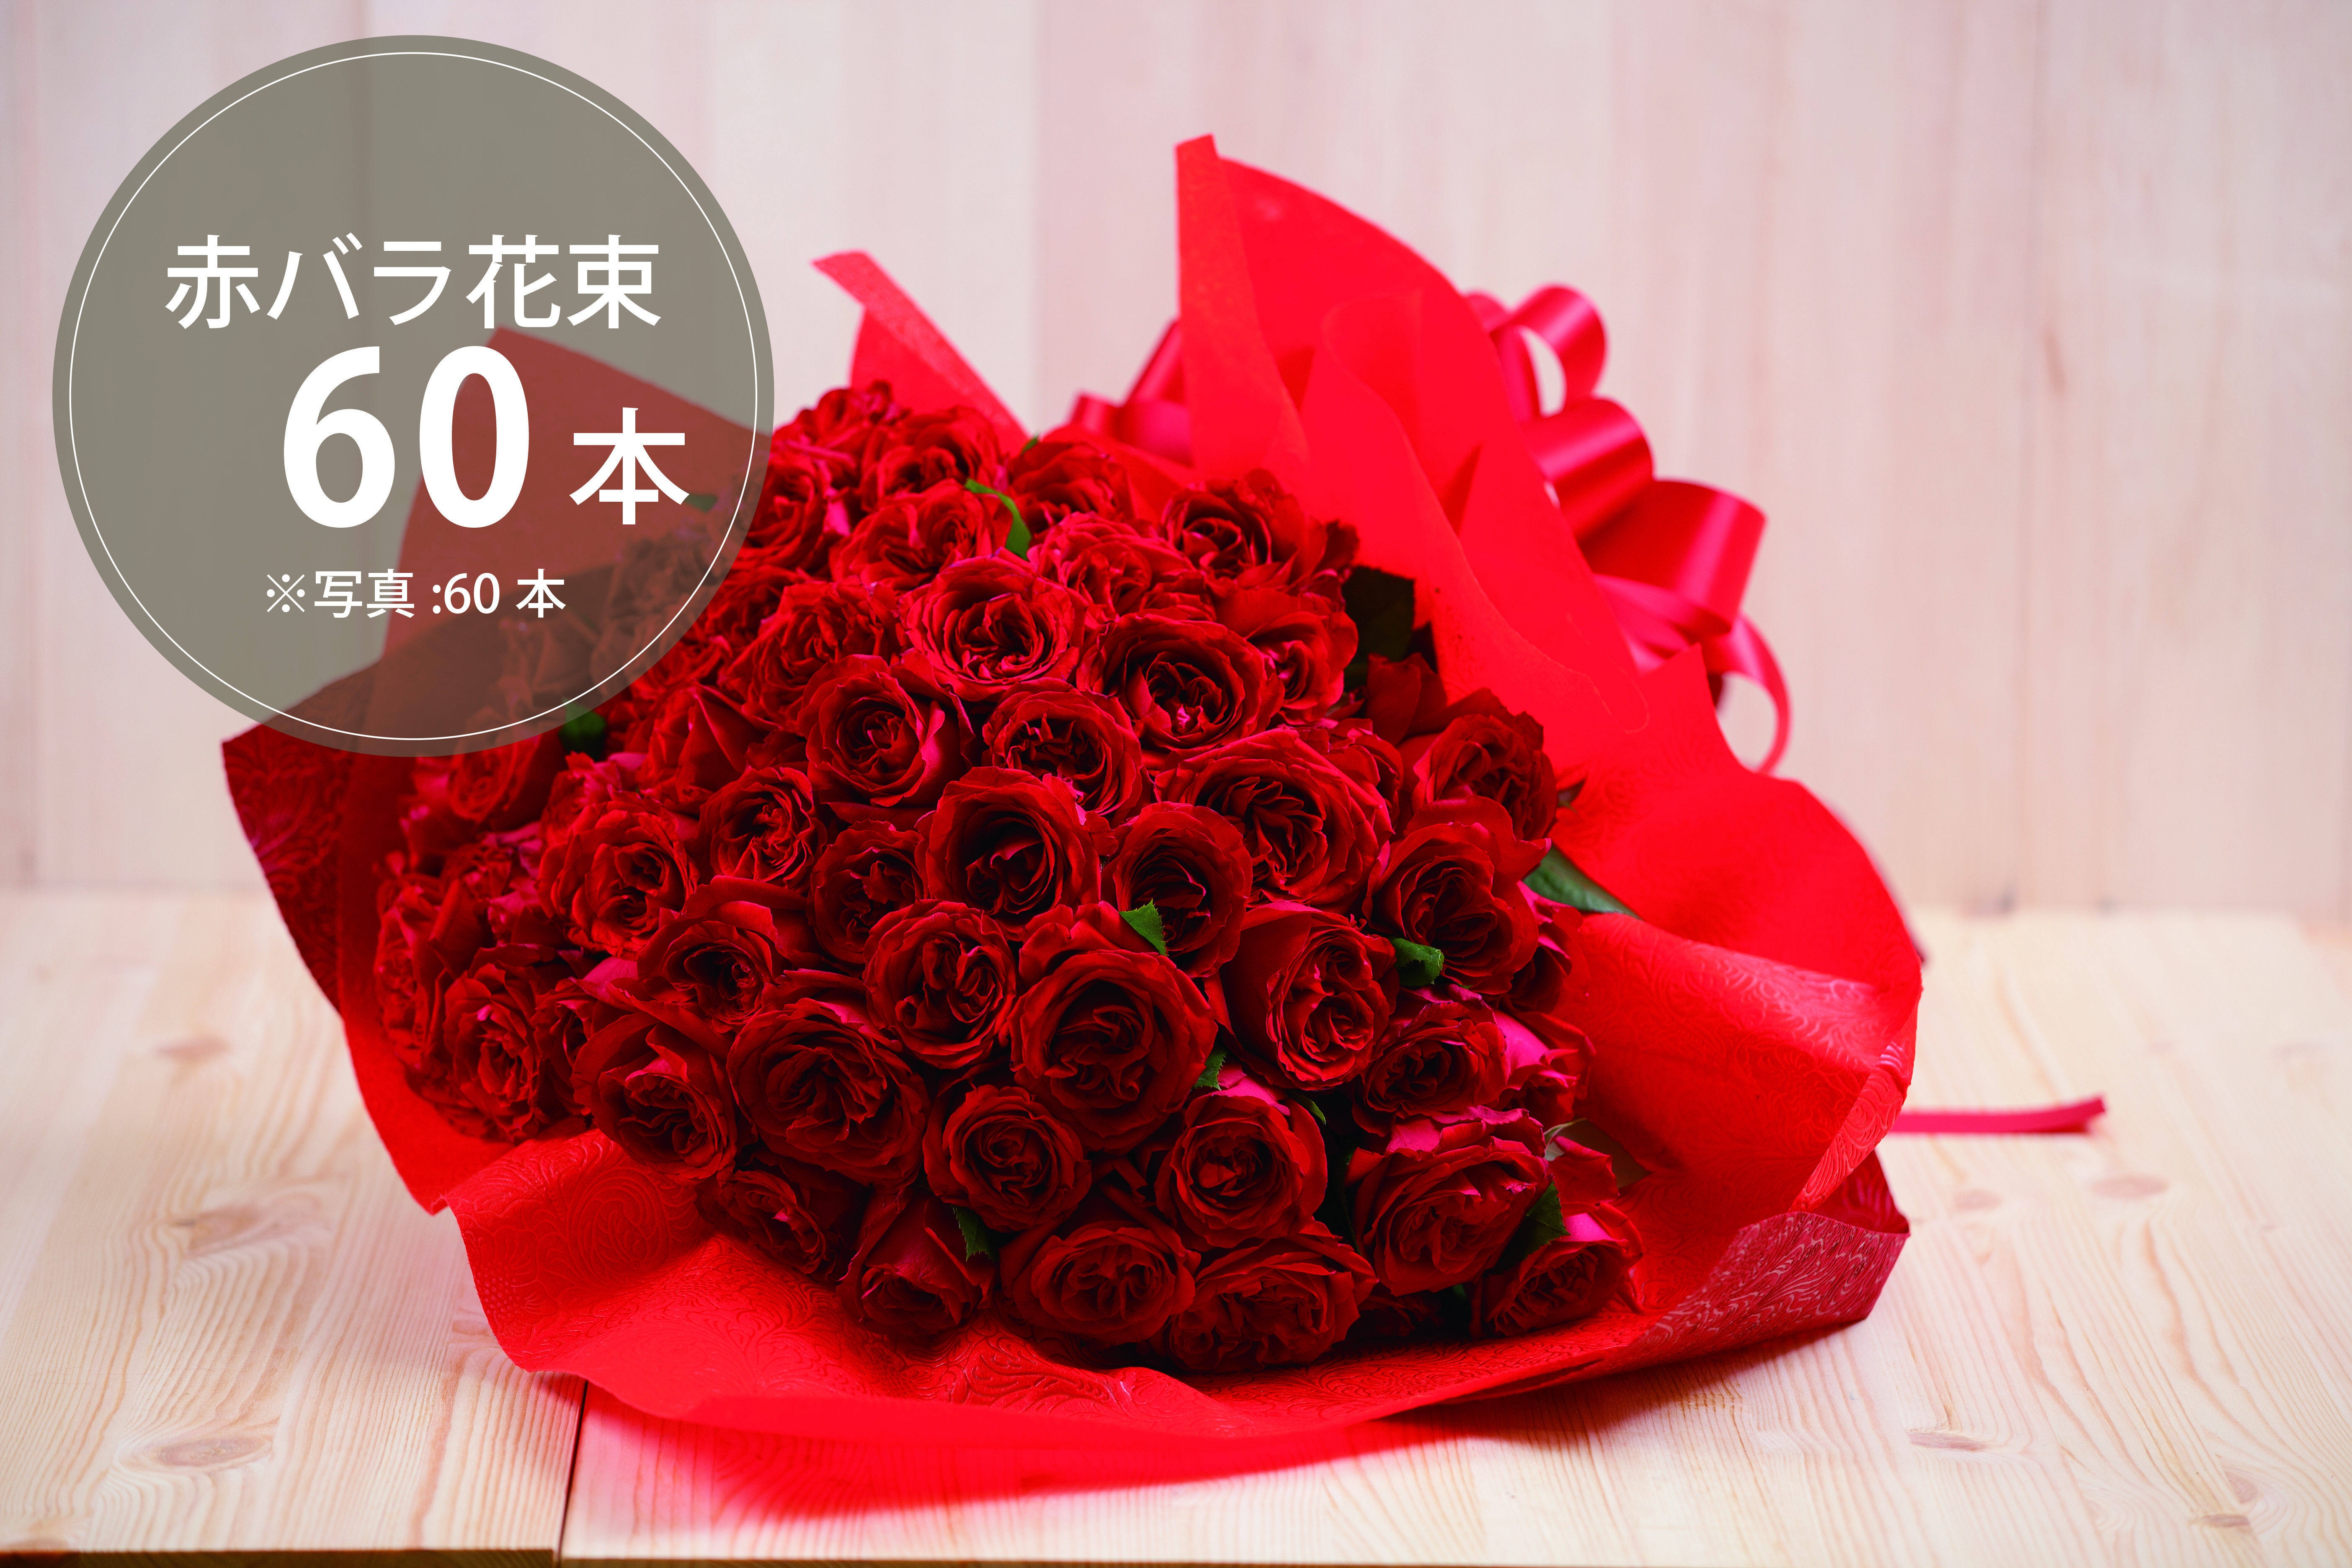 プレゼントにぴったり 花束 60本のバラ 4プラの花屋hug Flowers 通販サイト 花のプレゼント ギフトフラワー 北海道 東北地方送料無料